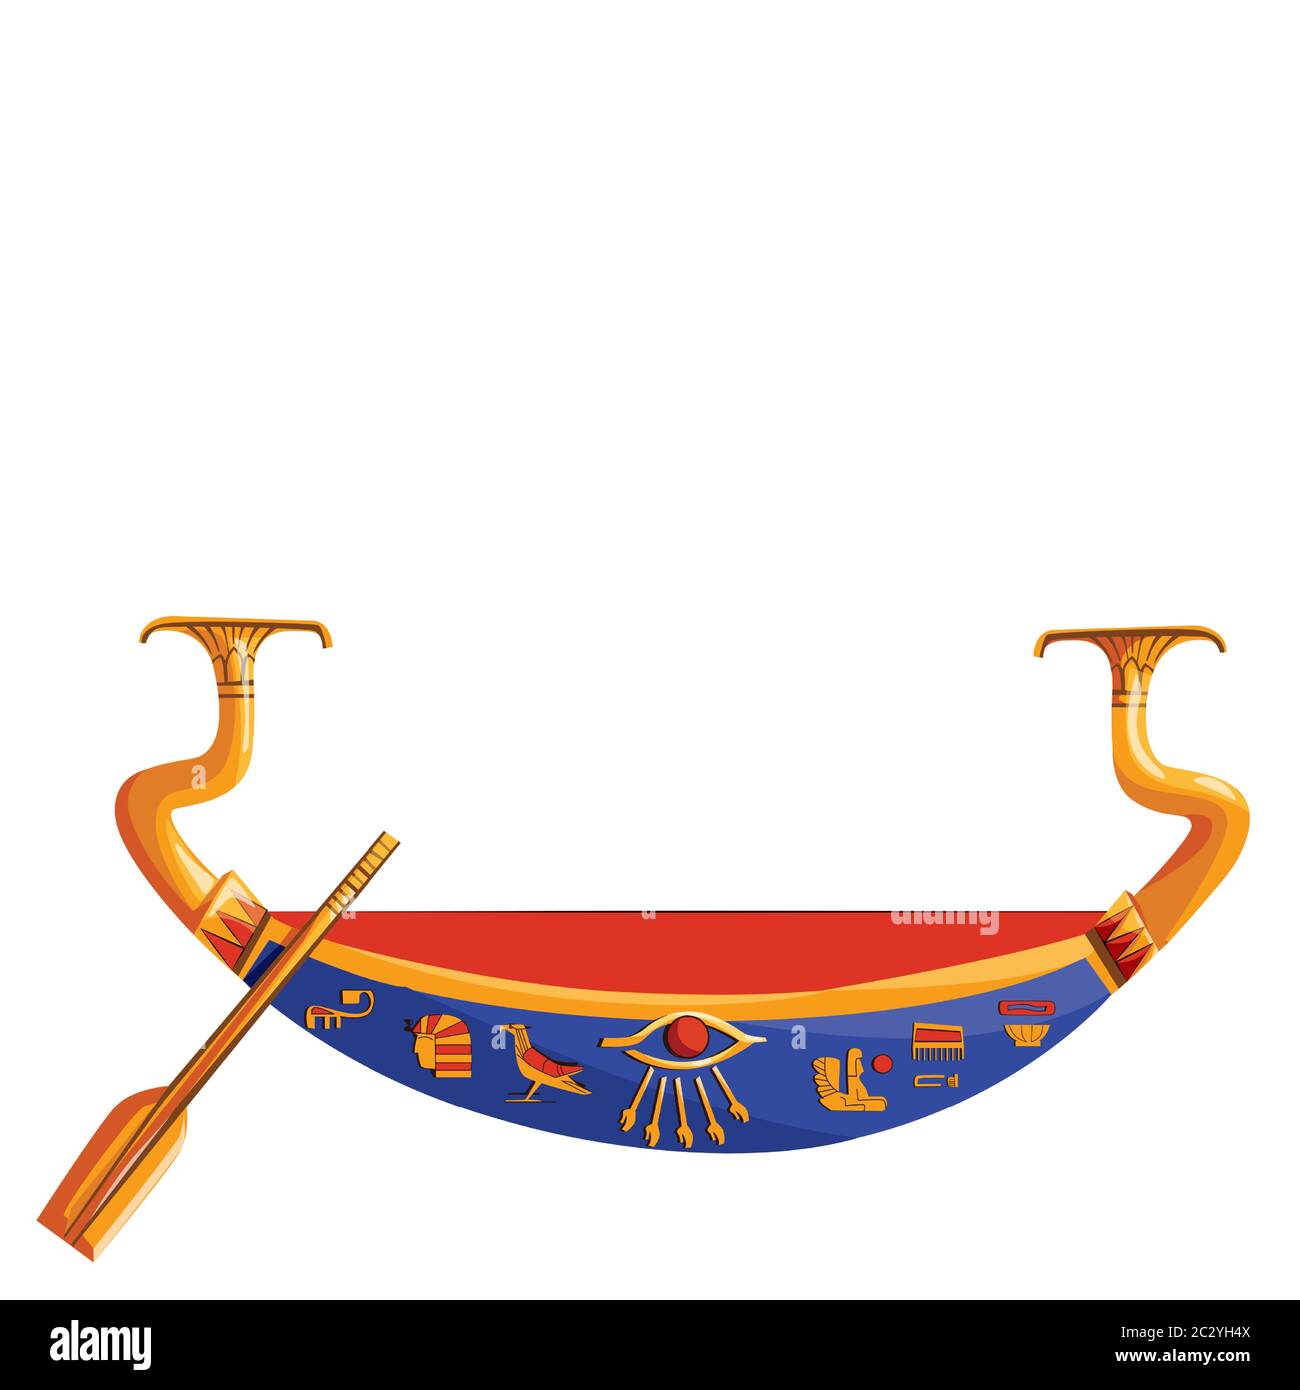 Antico Egitto barca di legno con pagaia per il sole dio viaggio cartoon illustrazione vettoriale. Simbolo religioso della cultura egiziana, barbecue decorato con ruggito per un Illustrazione Vettoriale